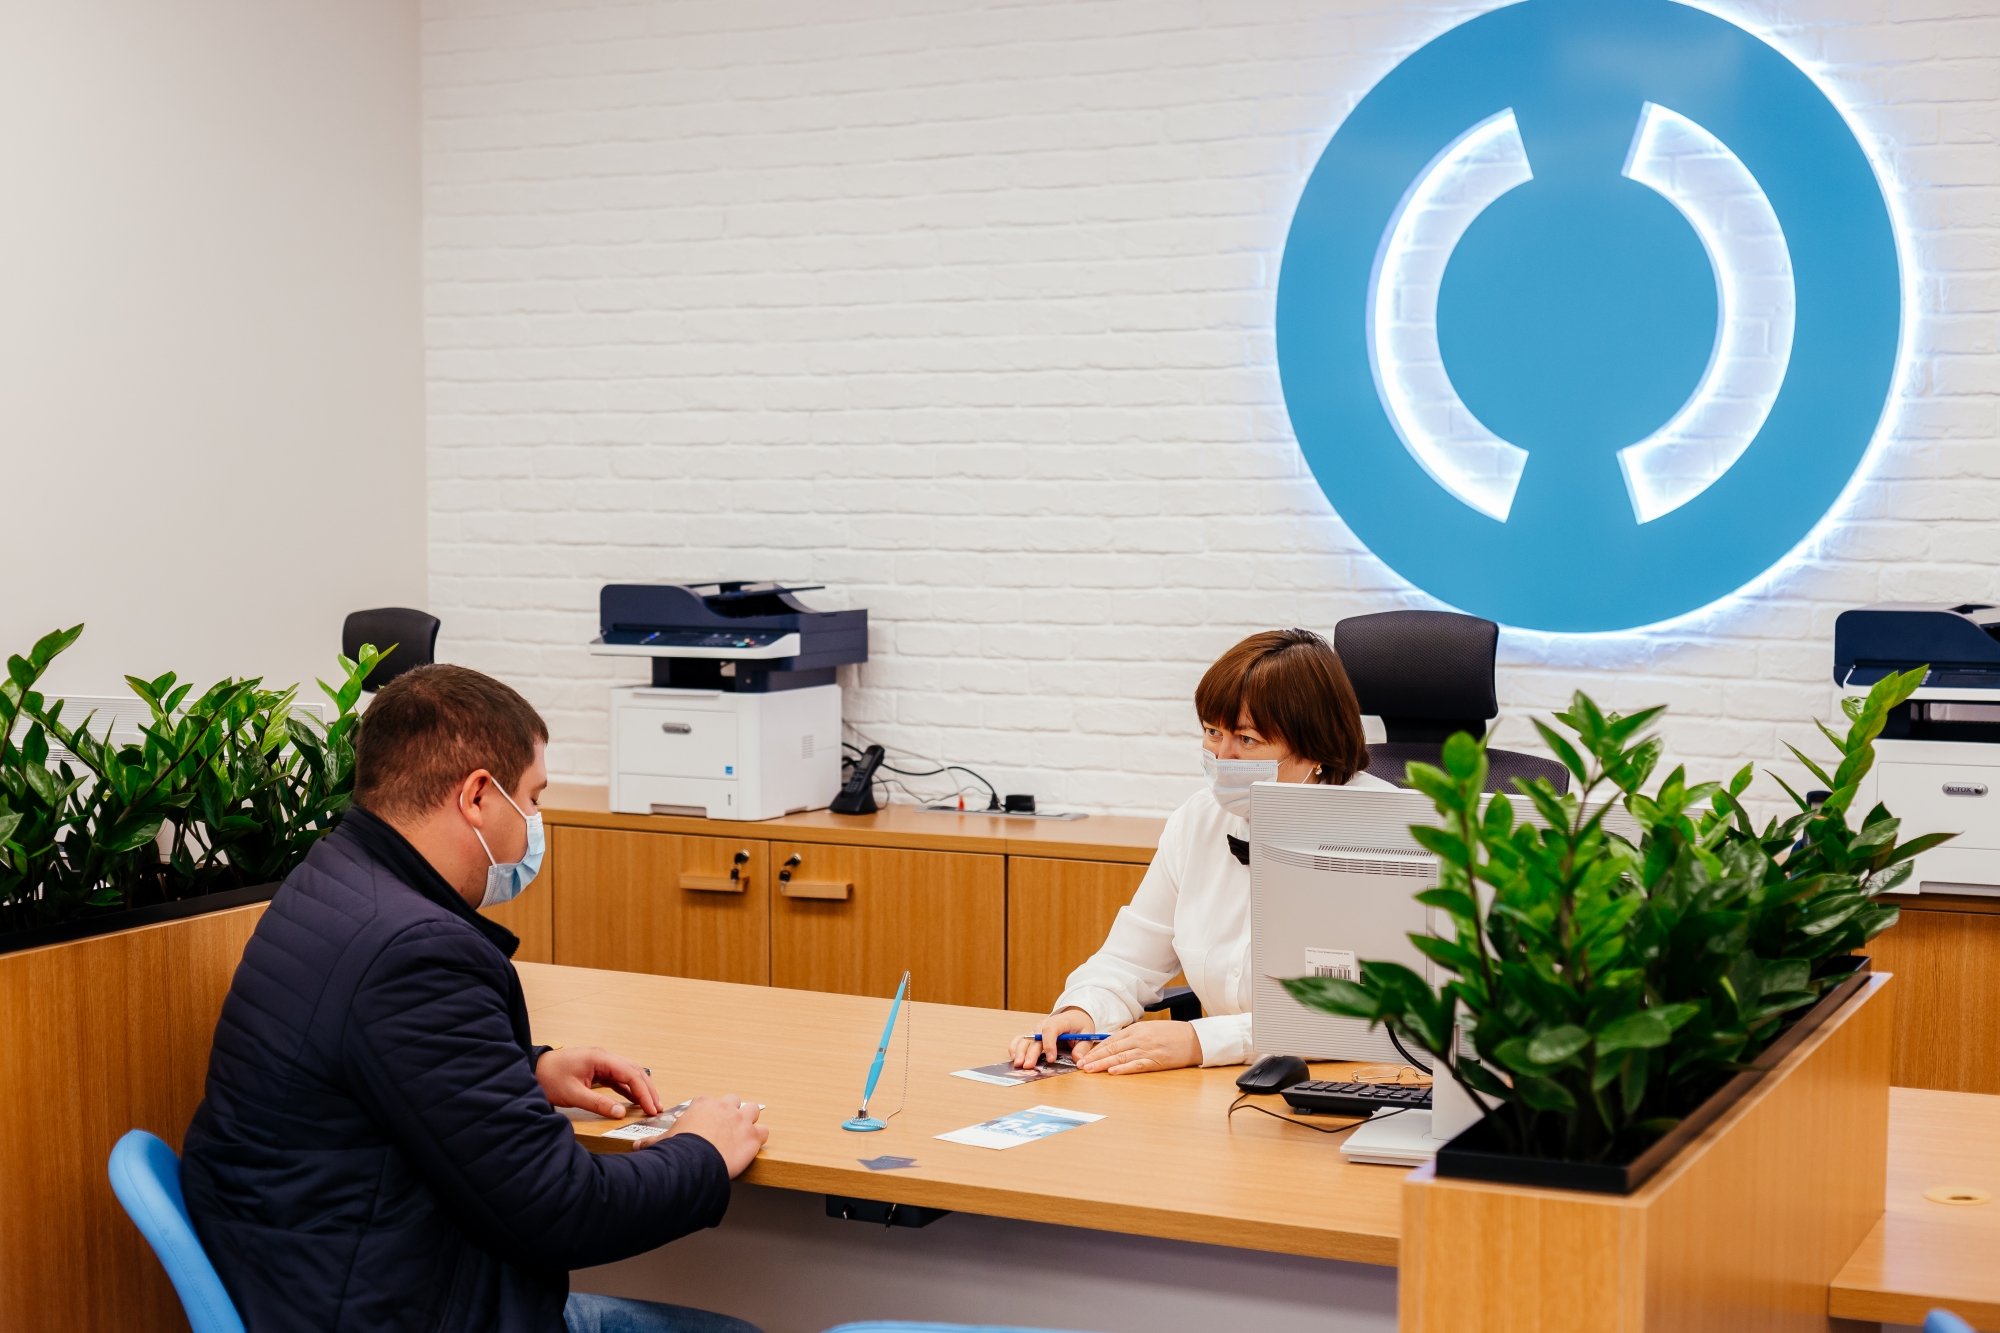 Банк «Открытие» запустил в Челнах офис нового формата (видео) 